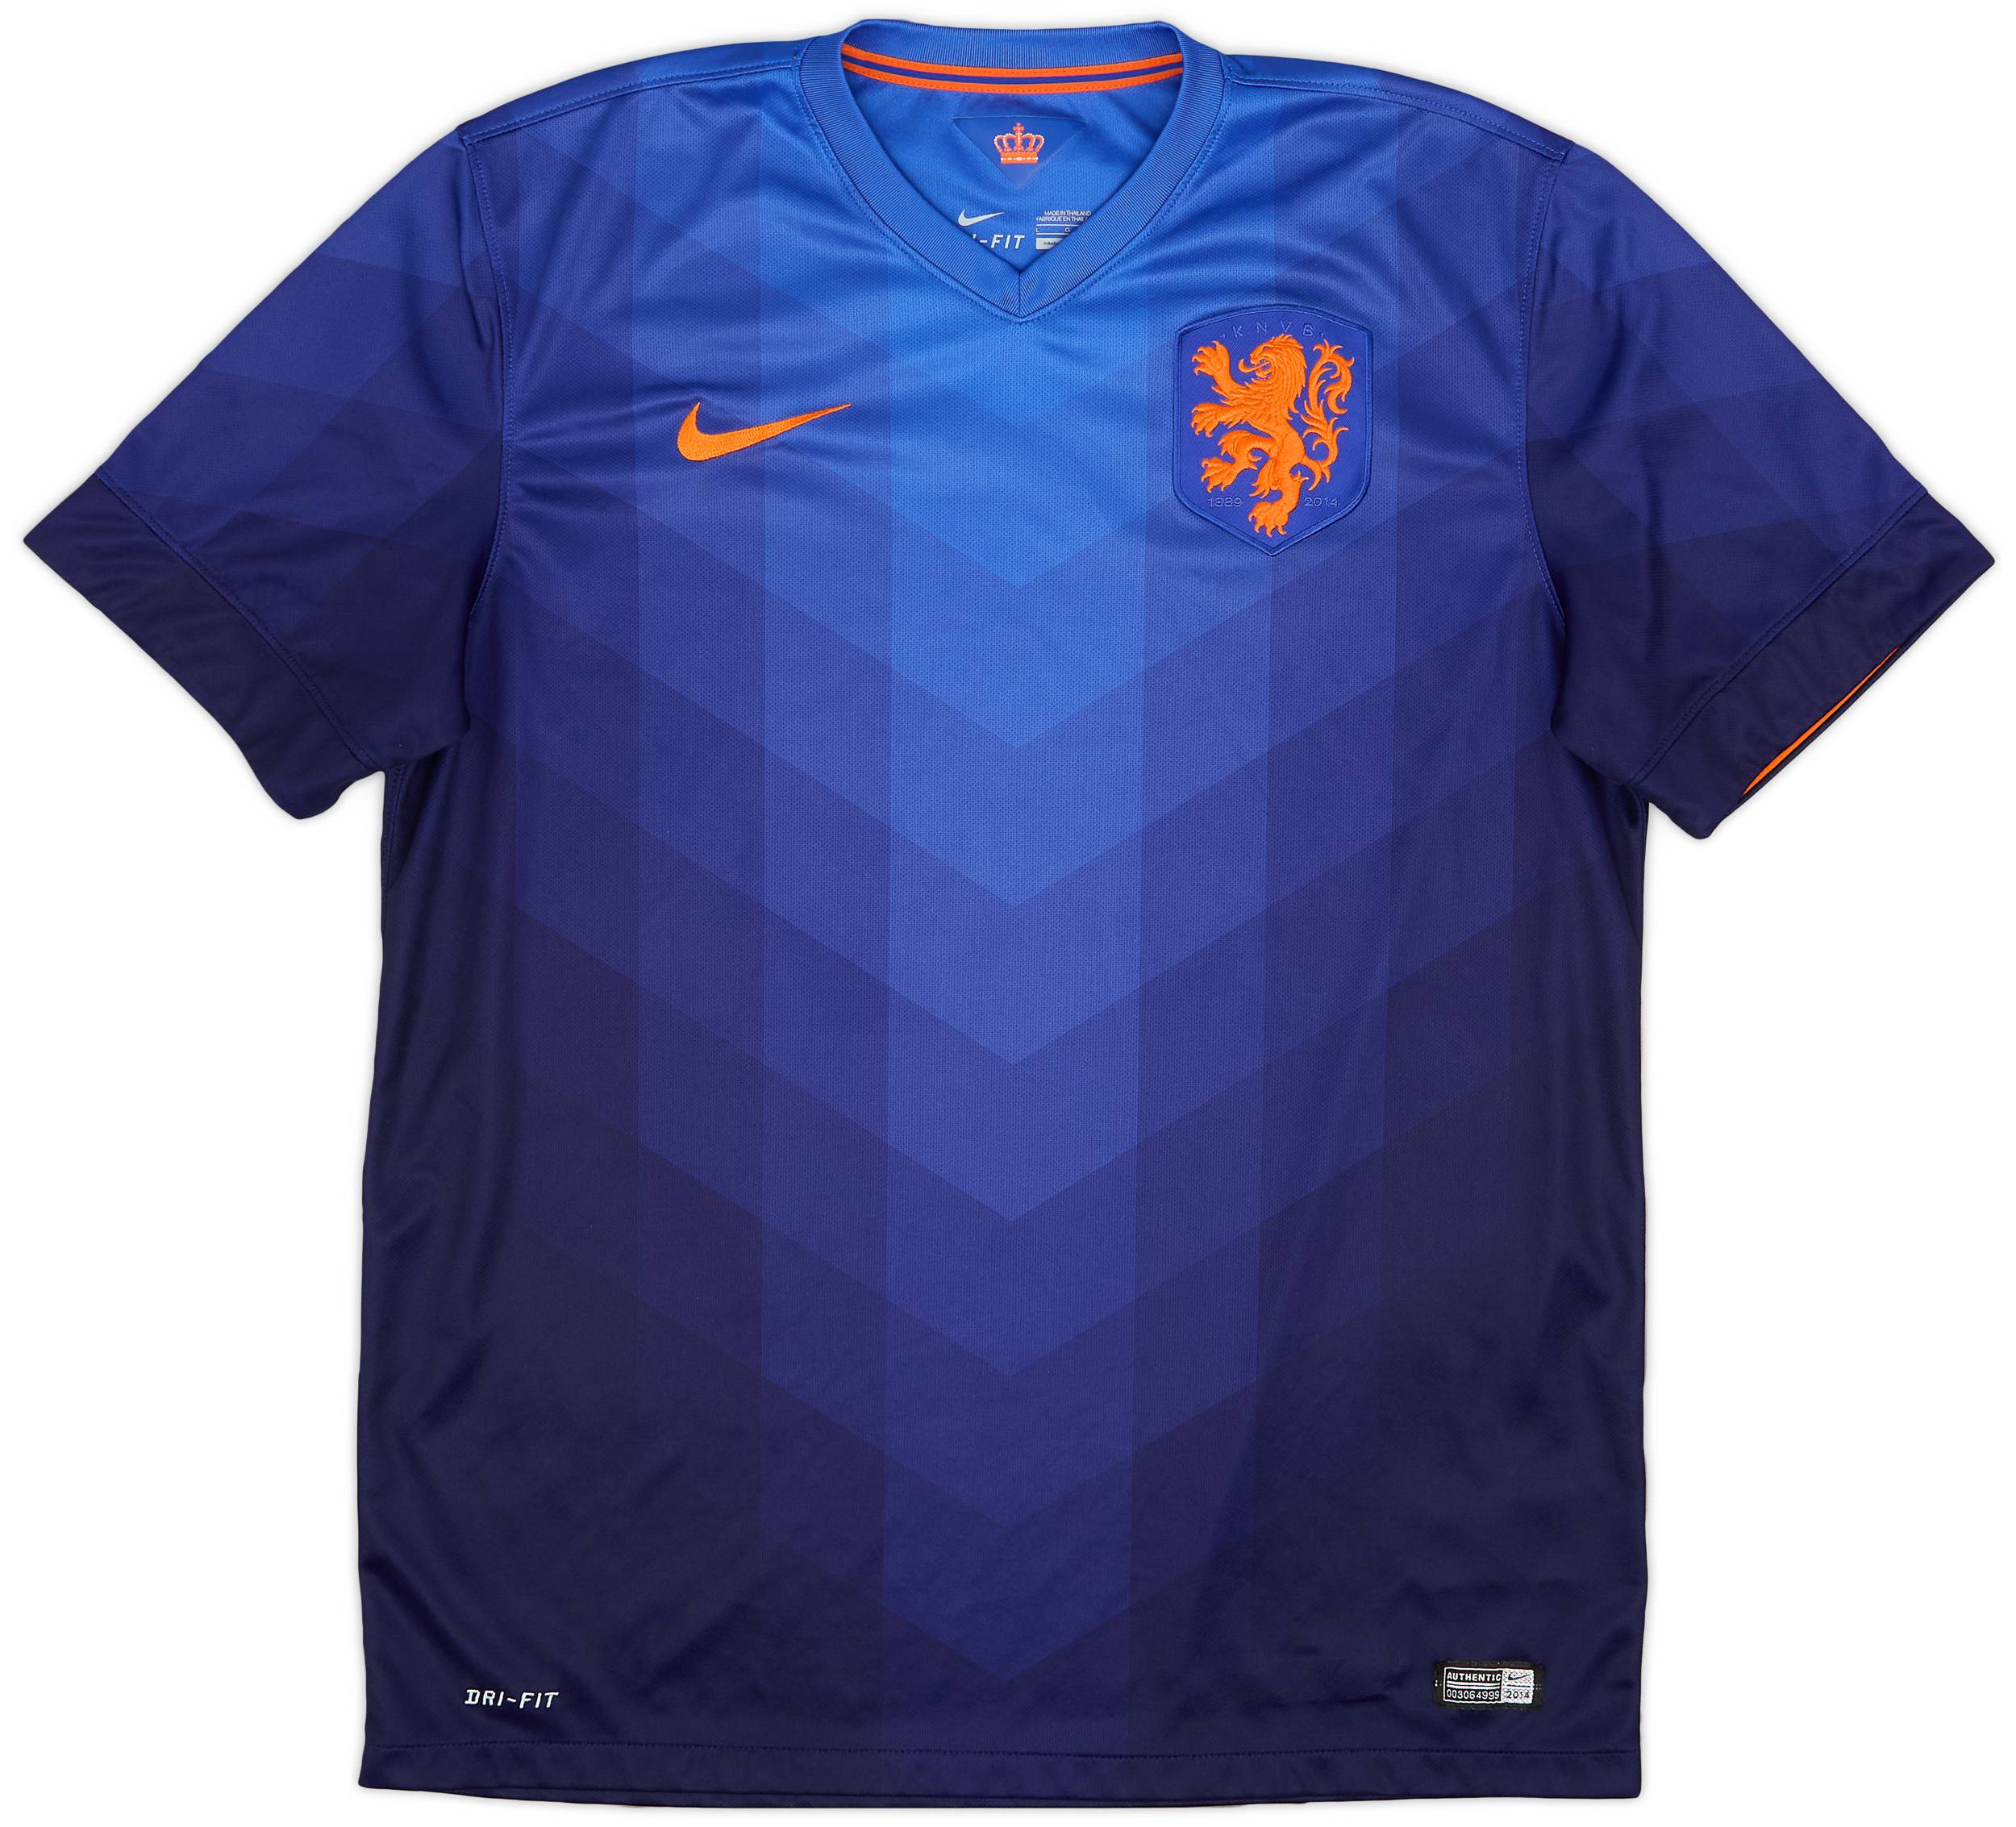 2014-15 Netherlands Away Shirt - 10/10 - (L)